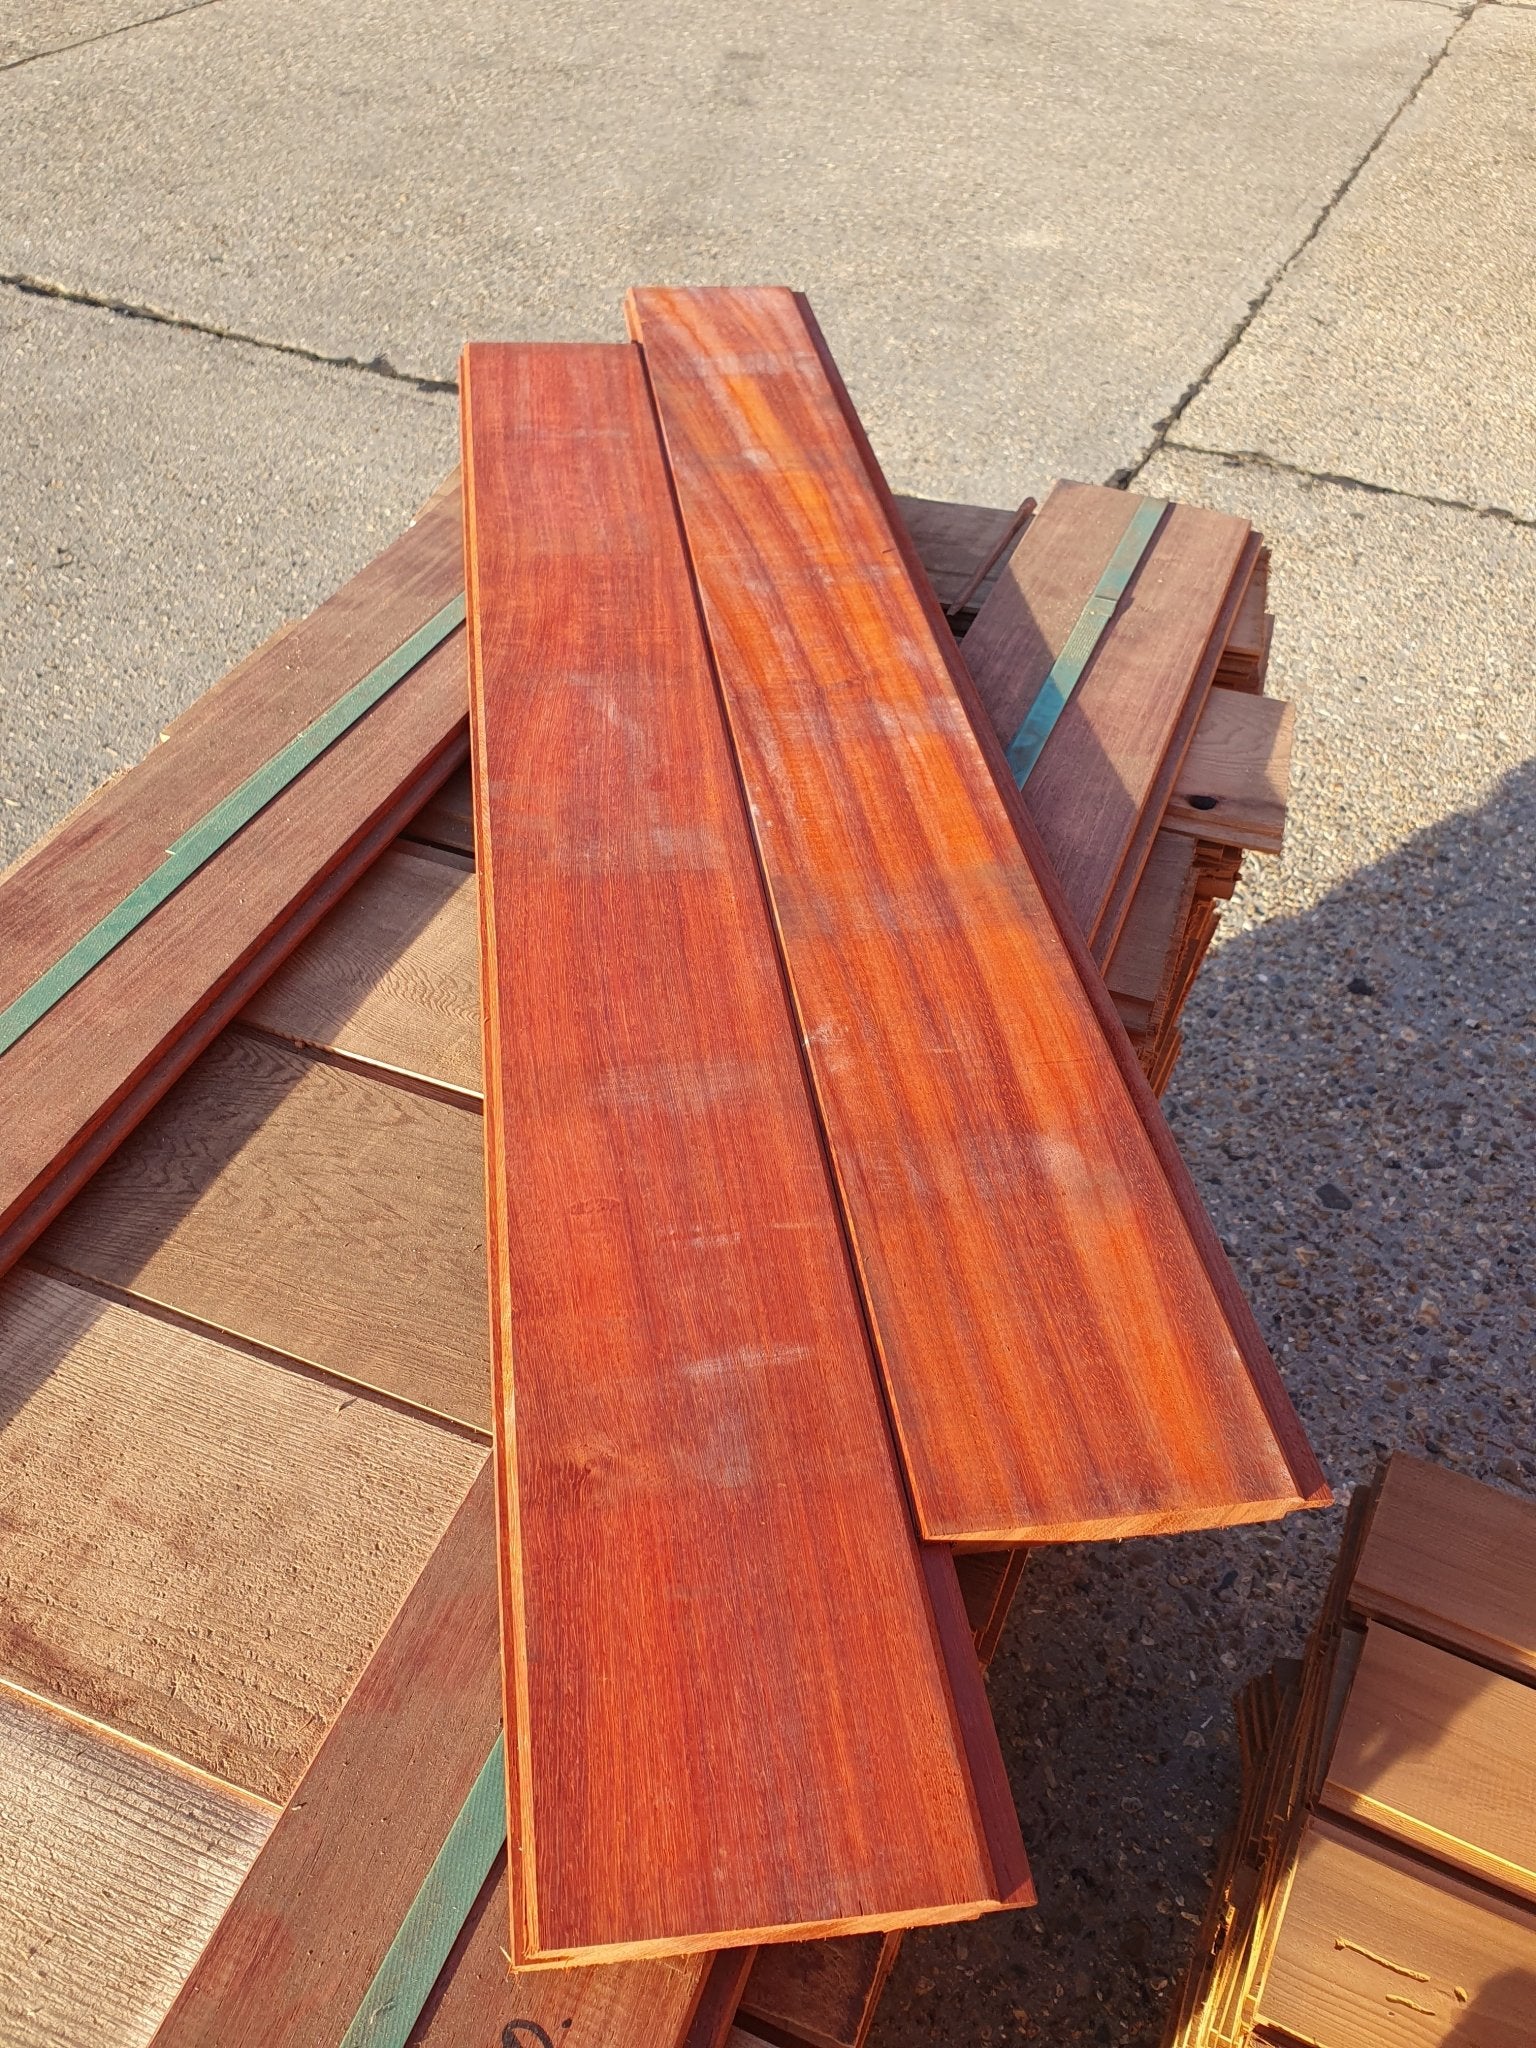 Compacte Padouk gevelplanken, de perfecte keuze voor wie de natuurlijke schoonheid van hout waardeert.